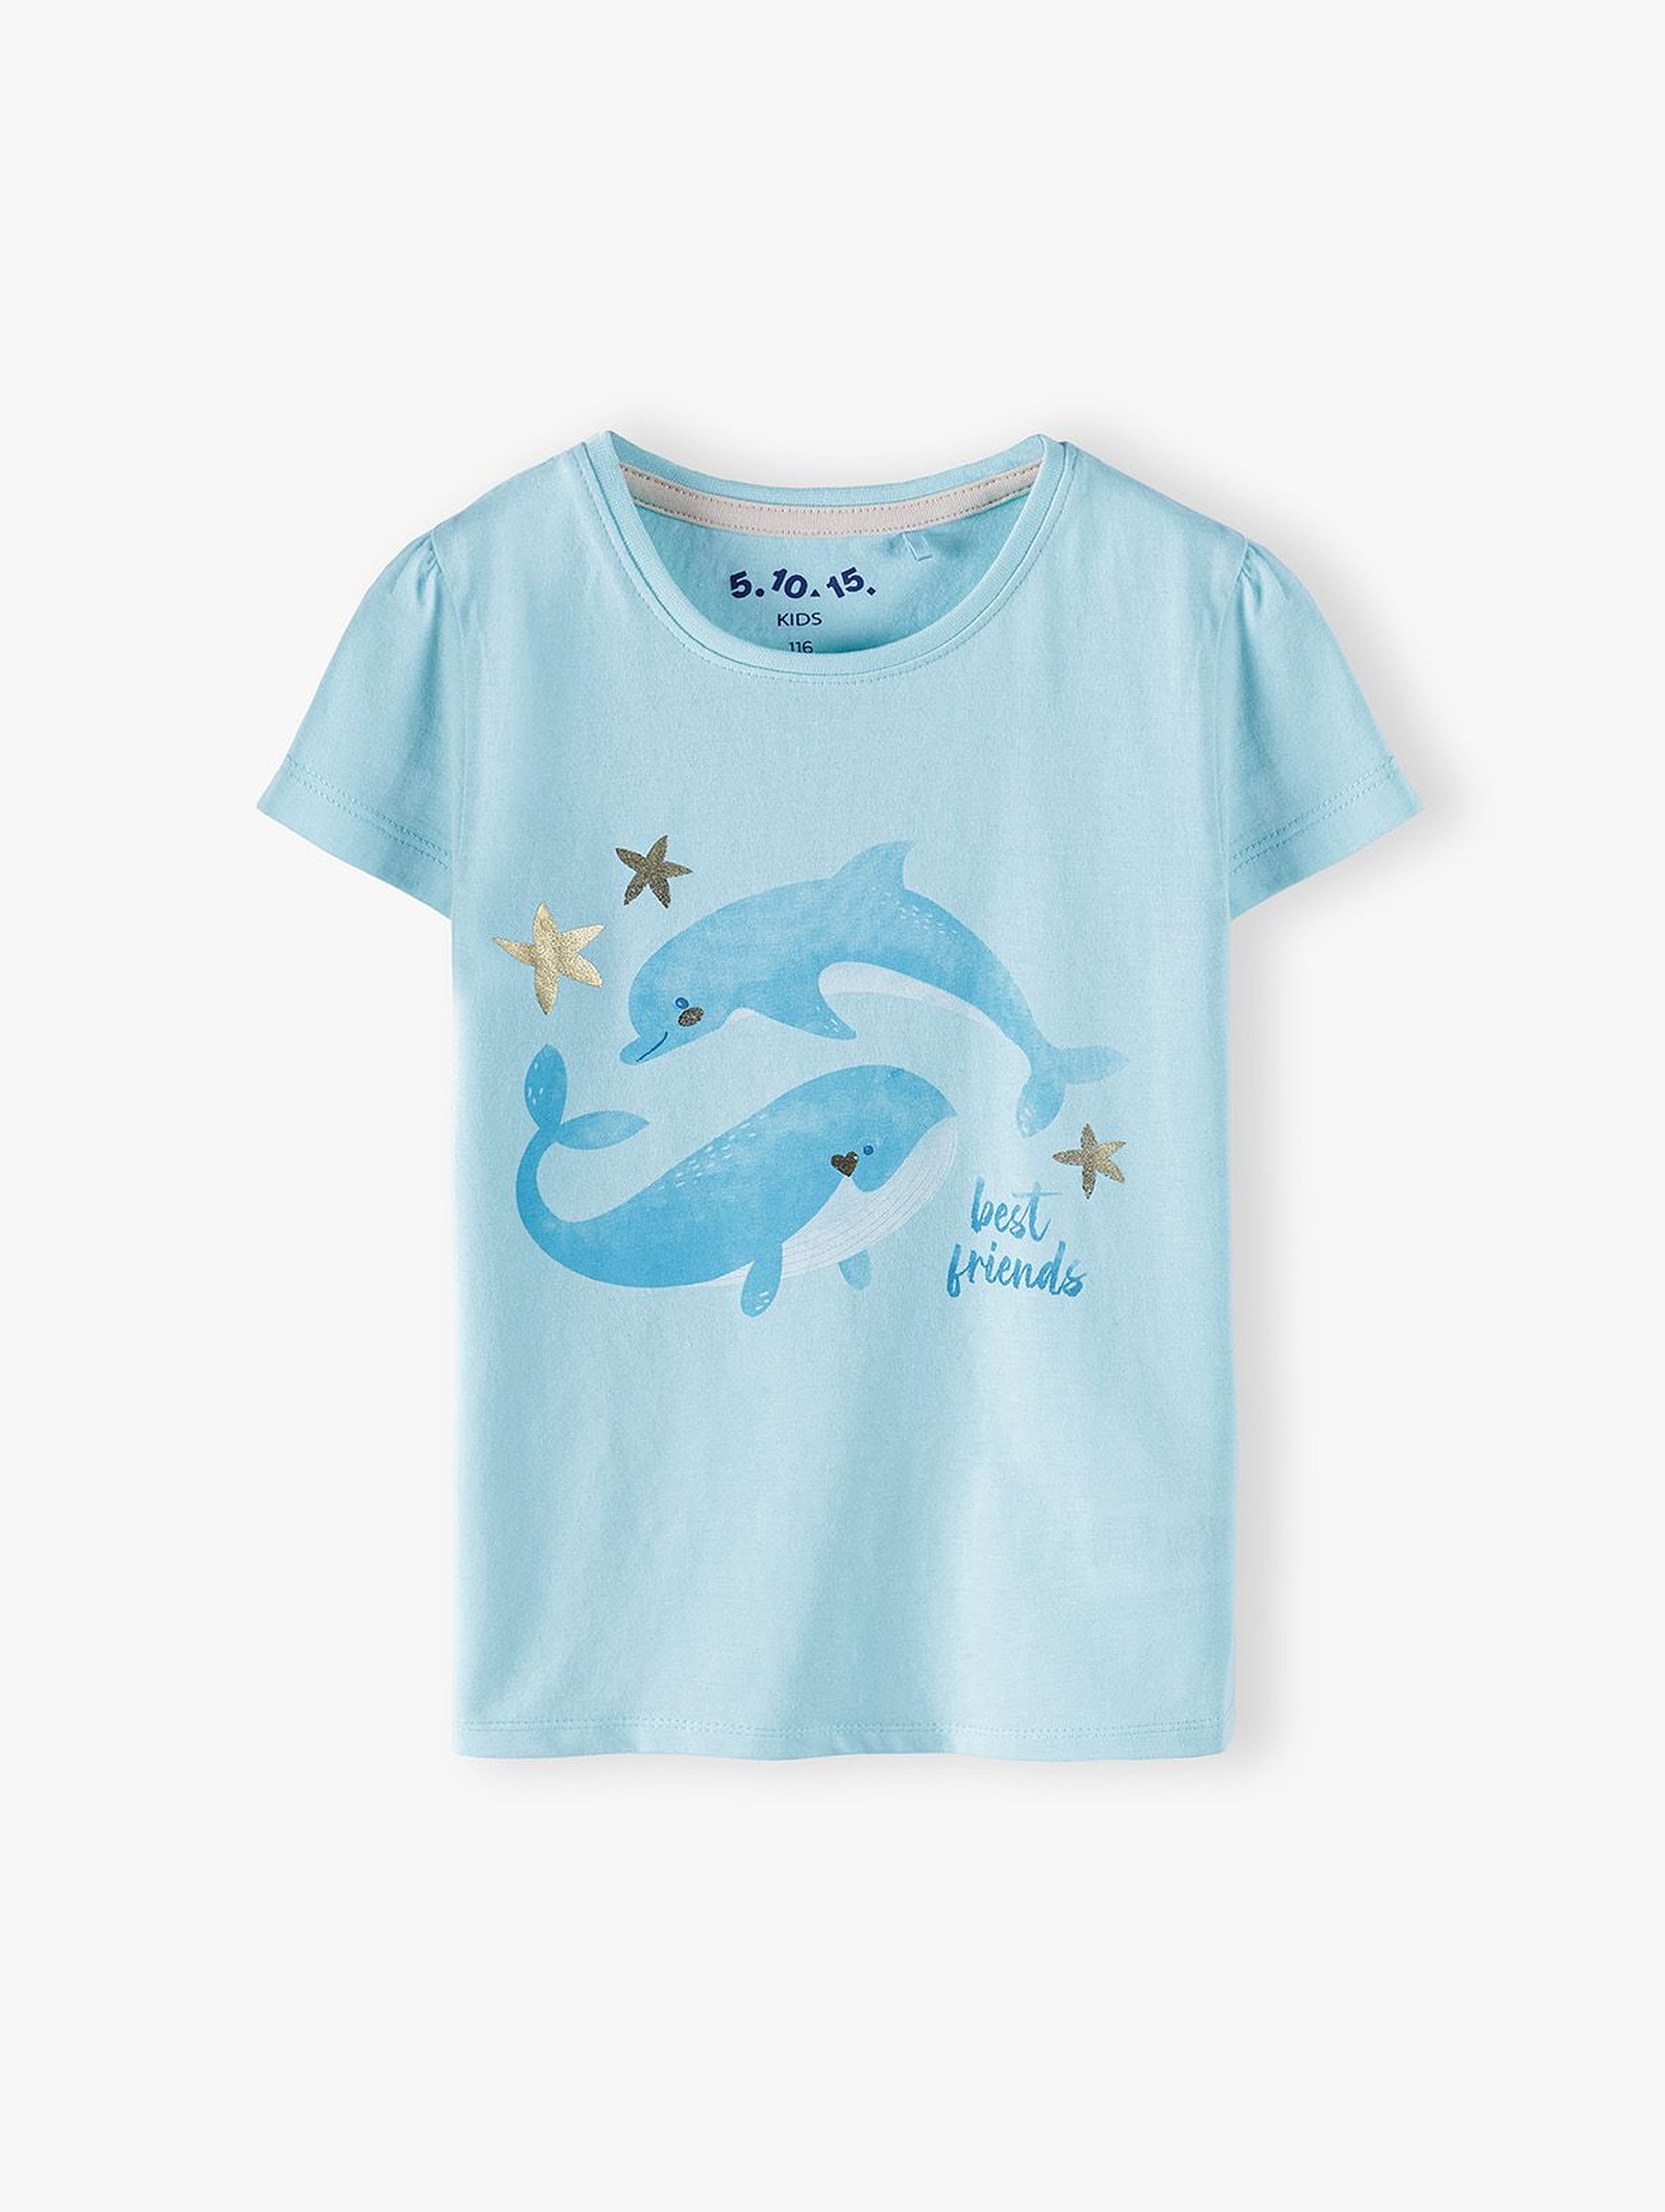 Bluzka dziewczęca z krótkim rękawem-niebieska z delfinami